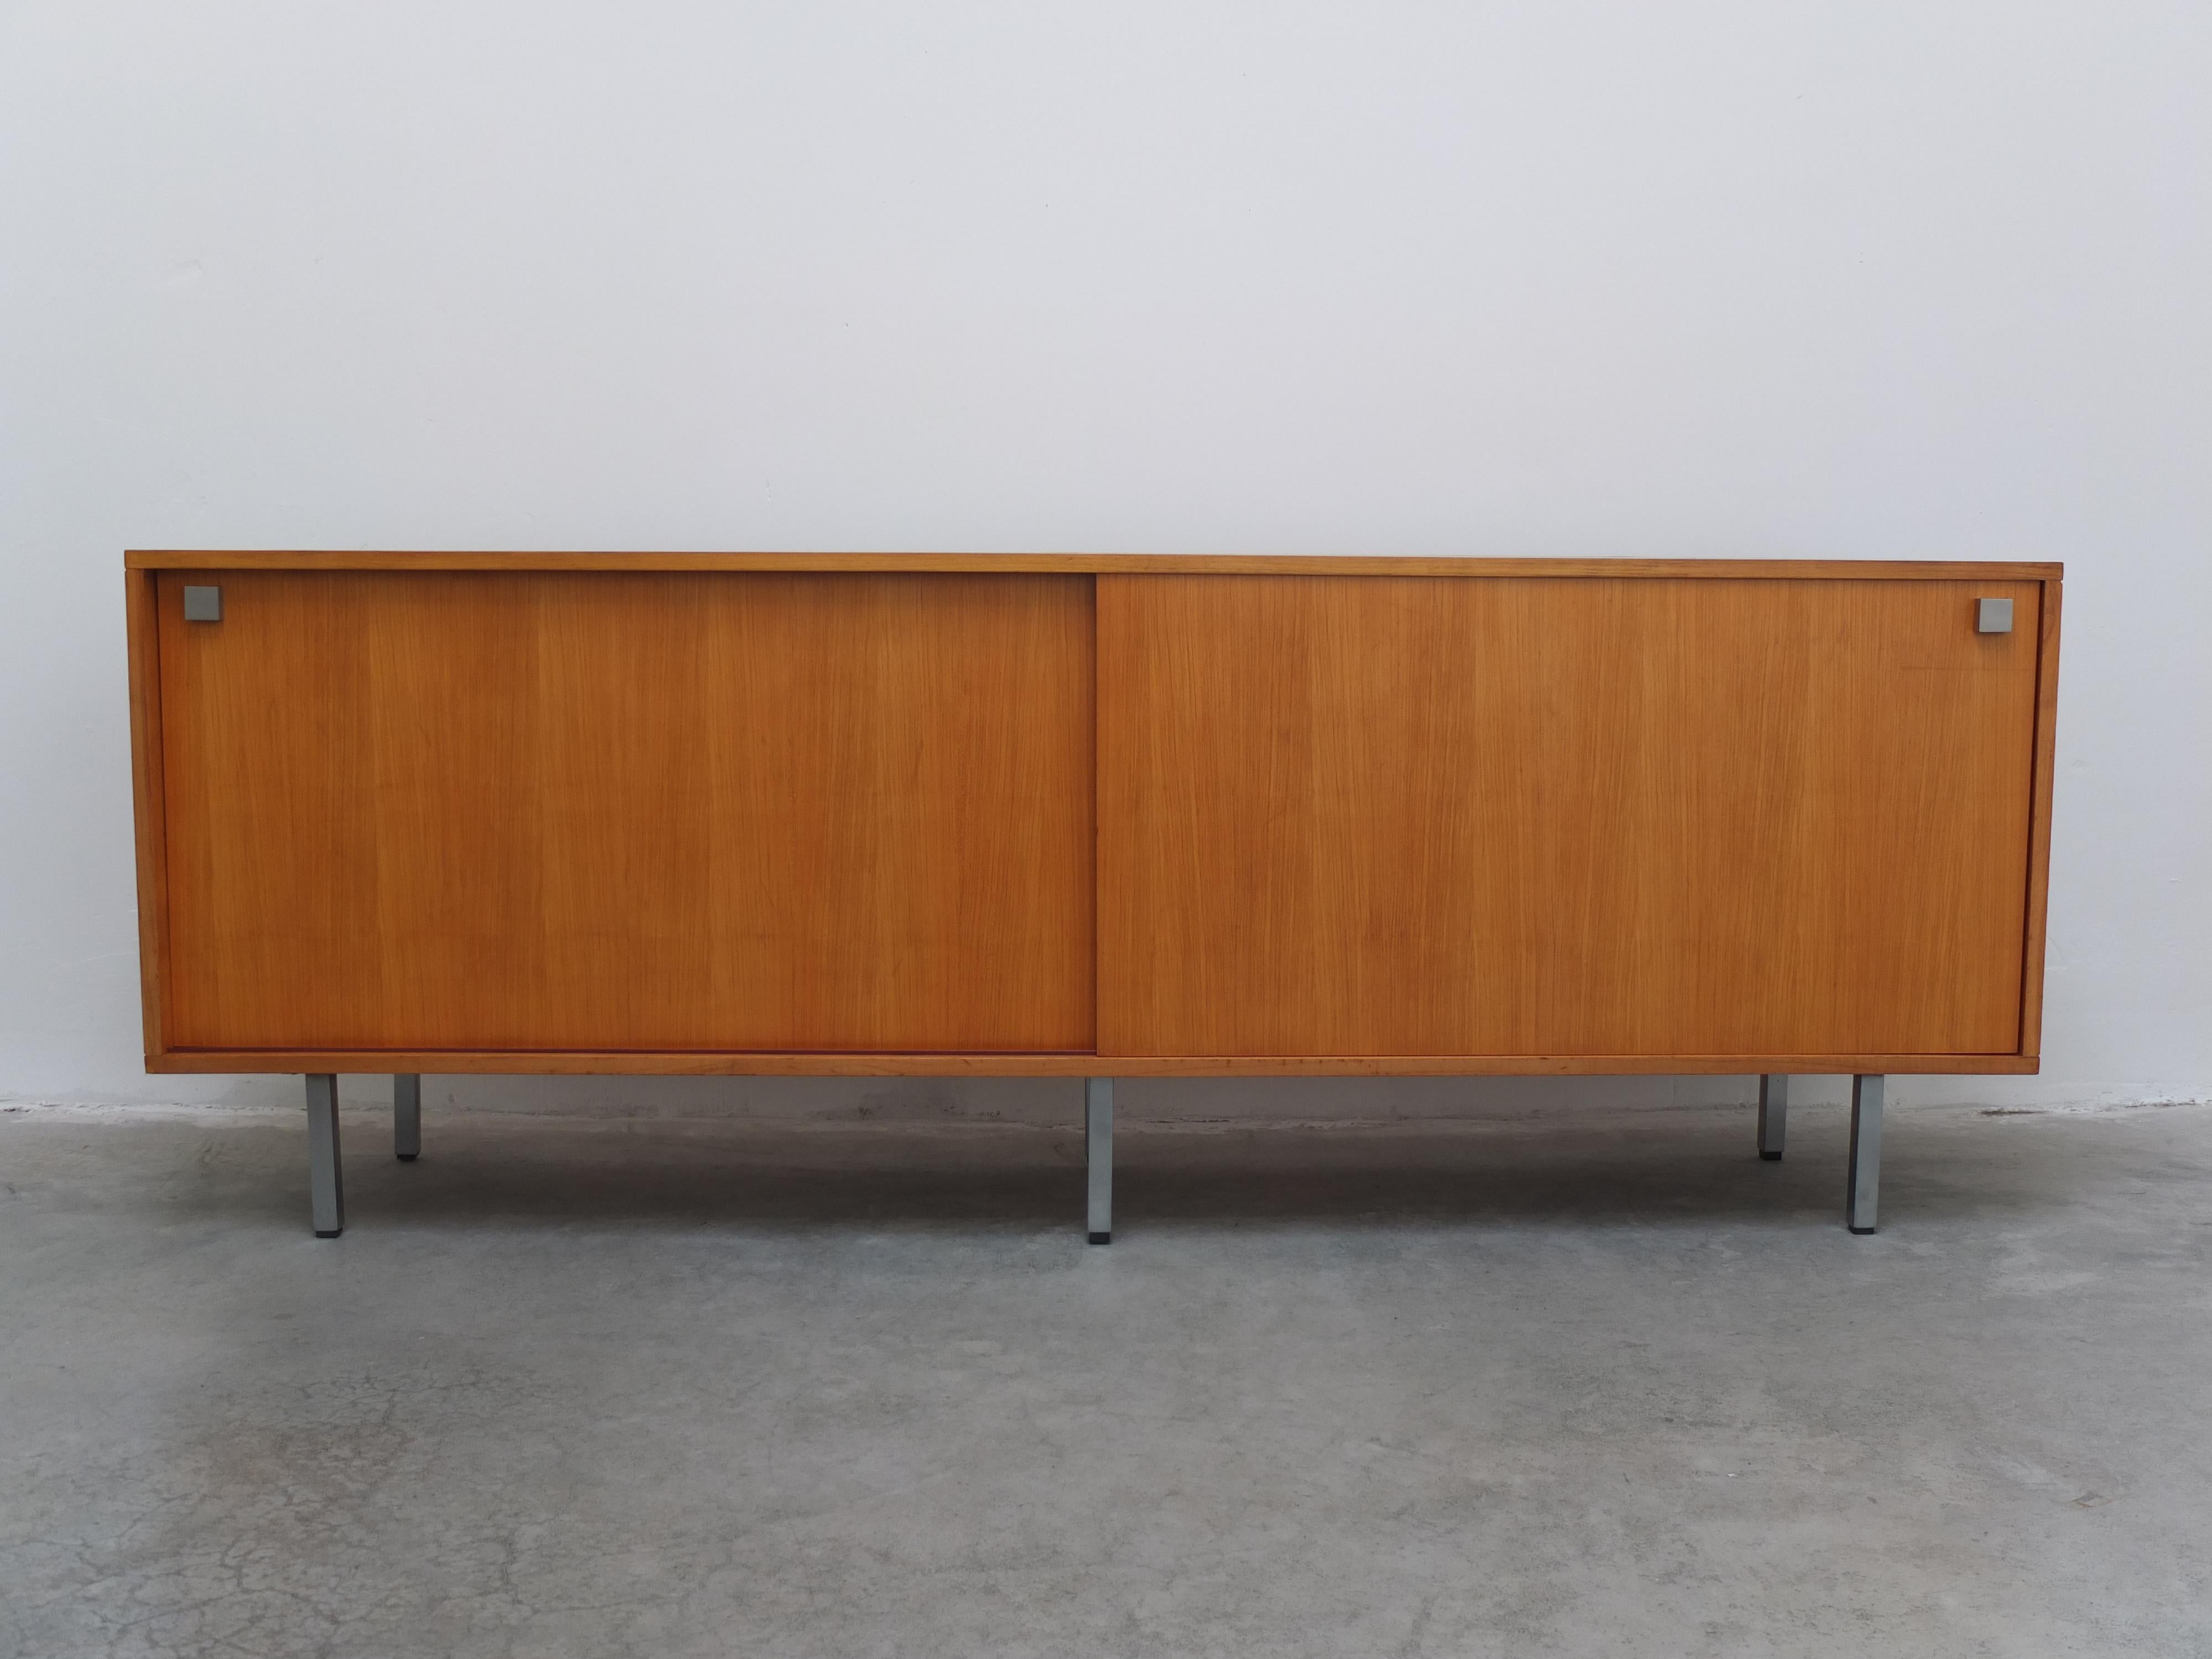 Un grand buffet conçu par le designer moderniste belge Alfred Hendrickx pour Belform, dans les années 1960. Ce modèle est disponible dans un placage de bois couleur miel rare. Ces buffets sont généralement fabriqués en bois de rose ou en teck. Cette